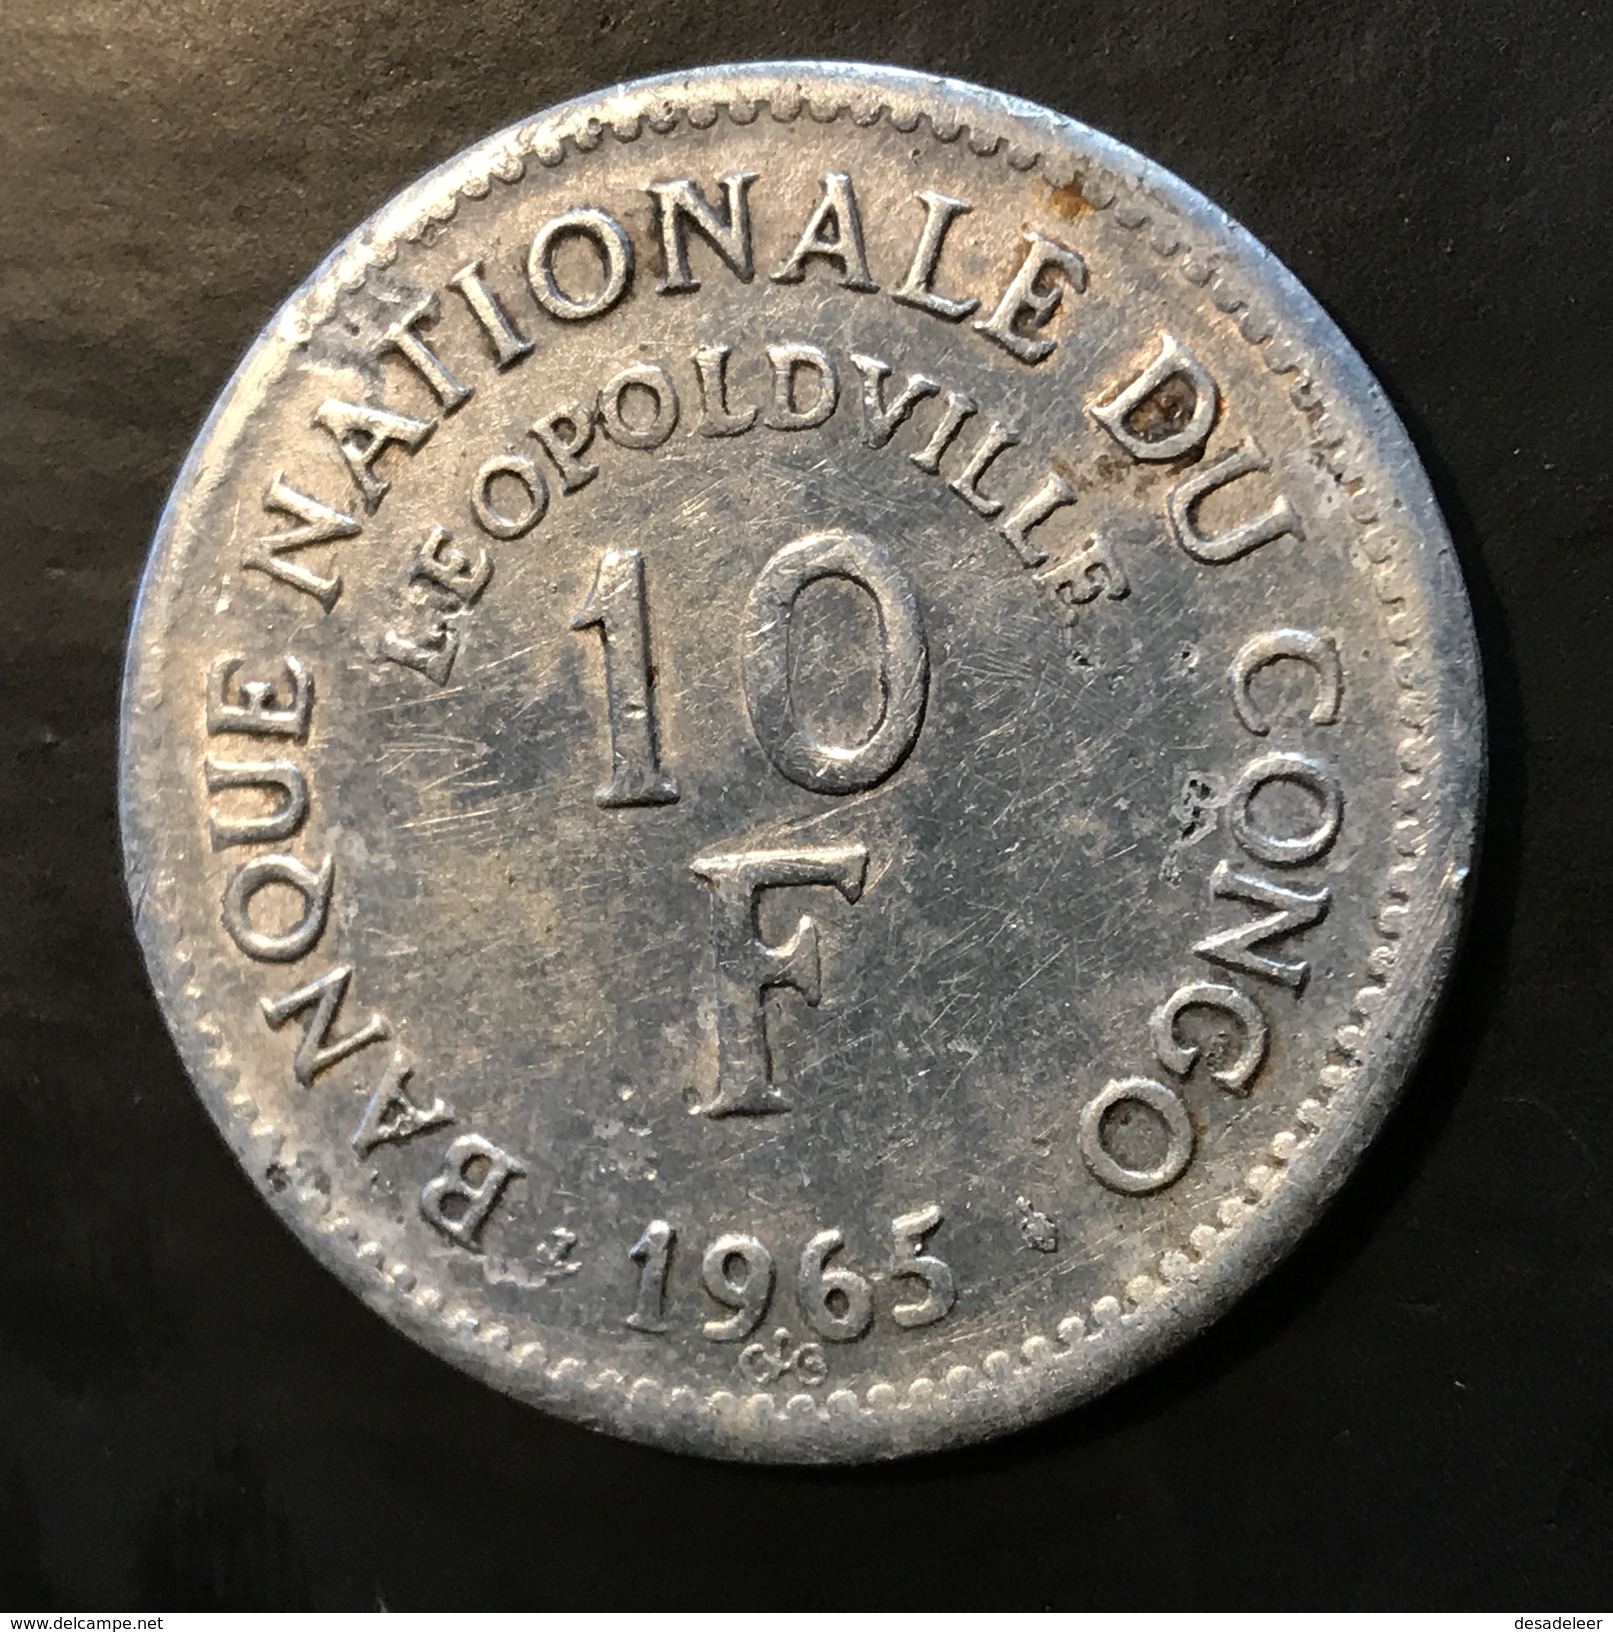 Congo 10 Francs 1965 - Congo (Rép. Démocratique, 1964-70)